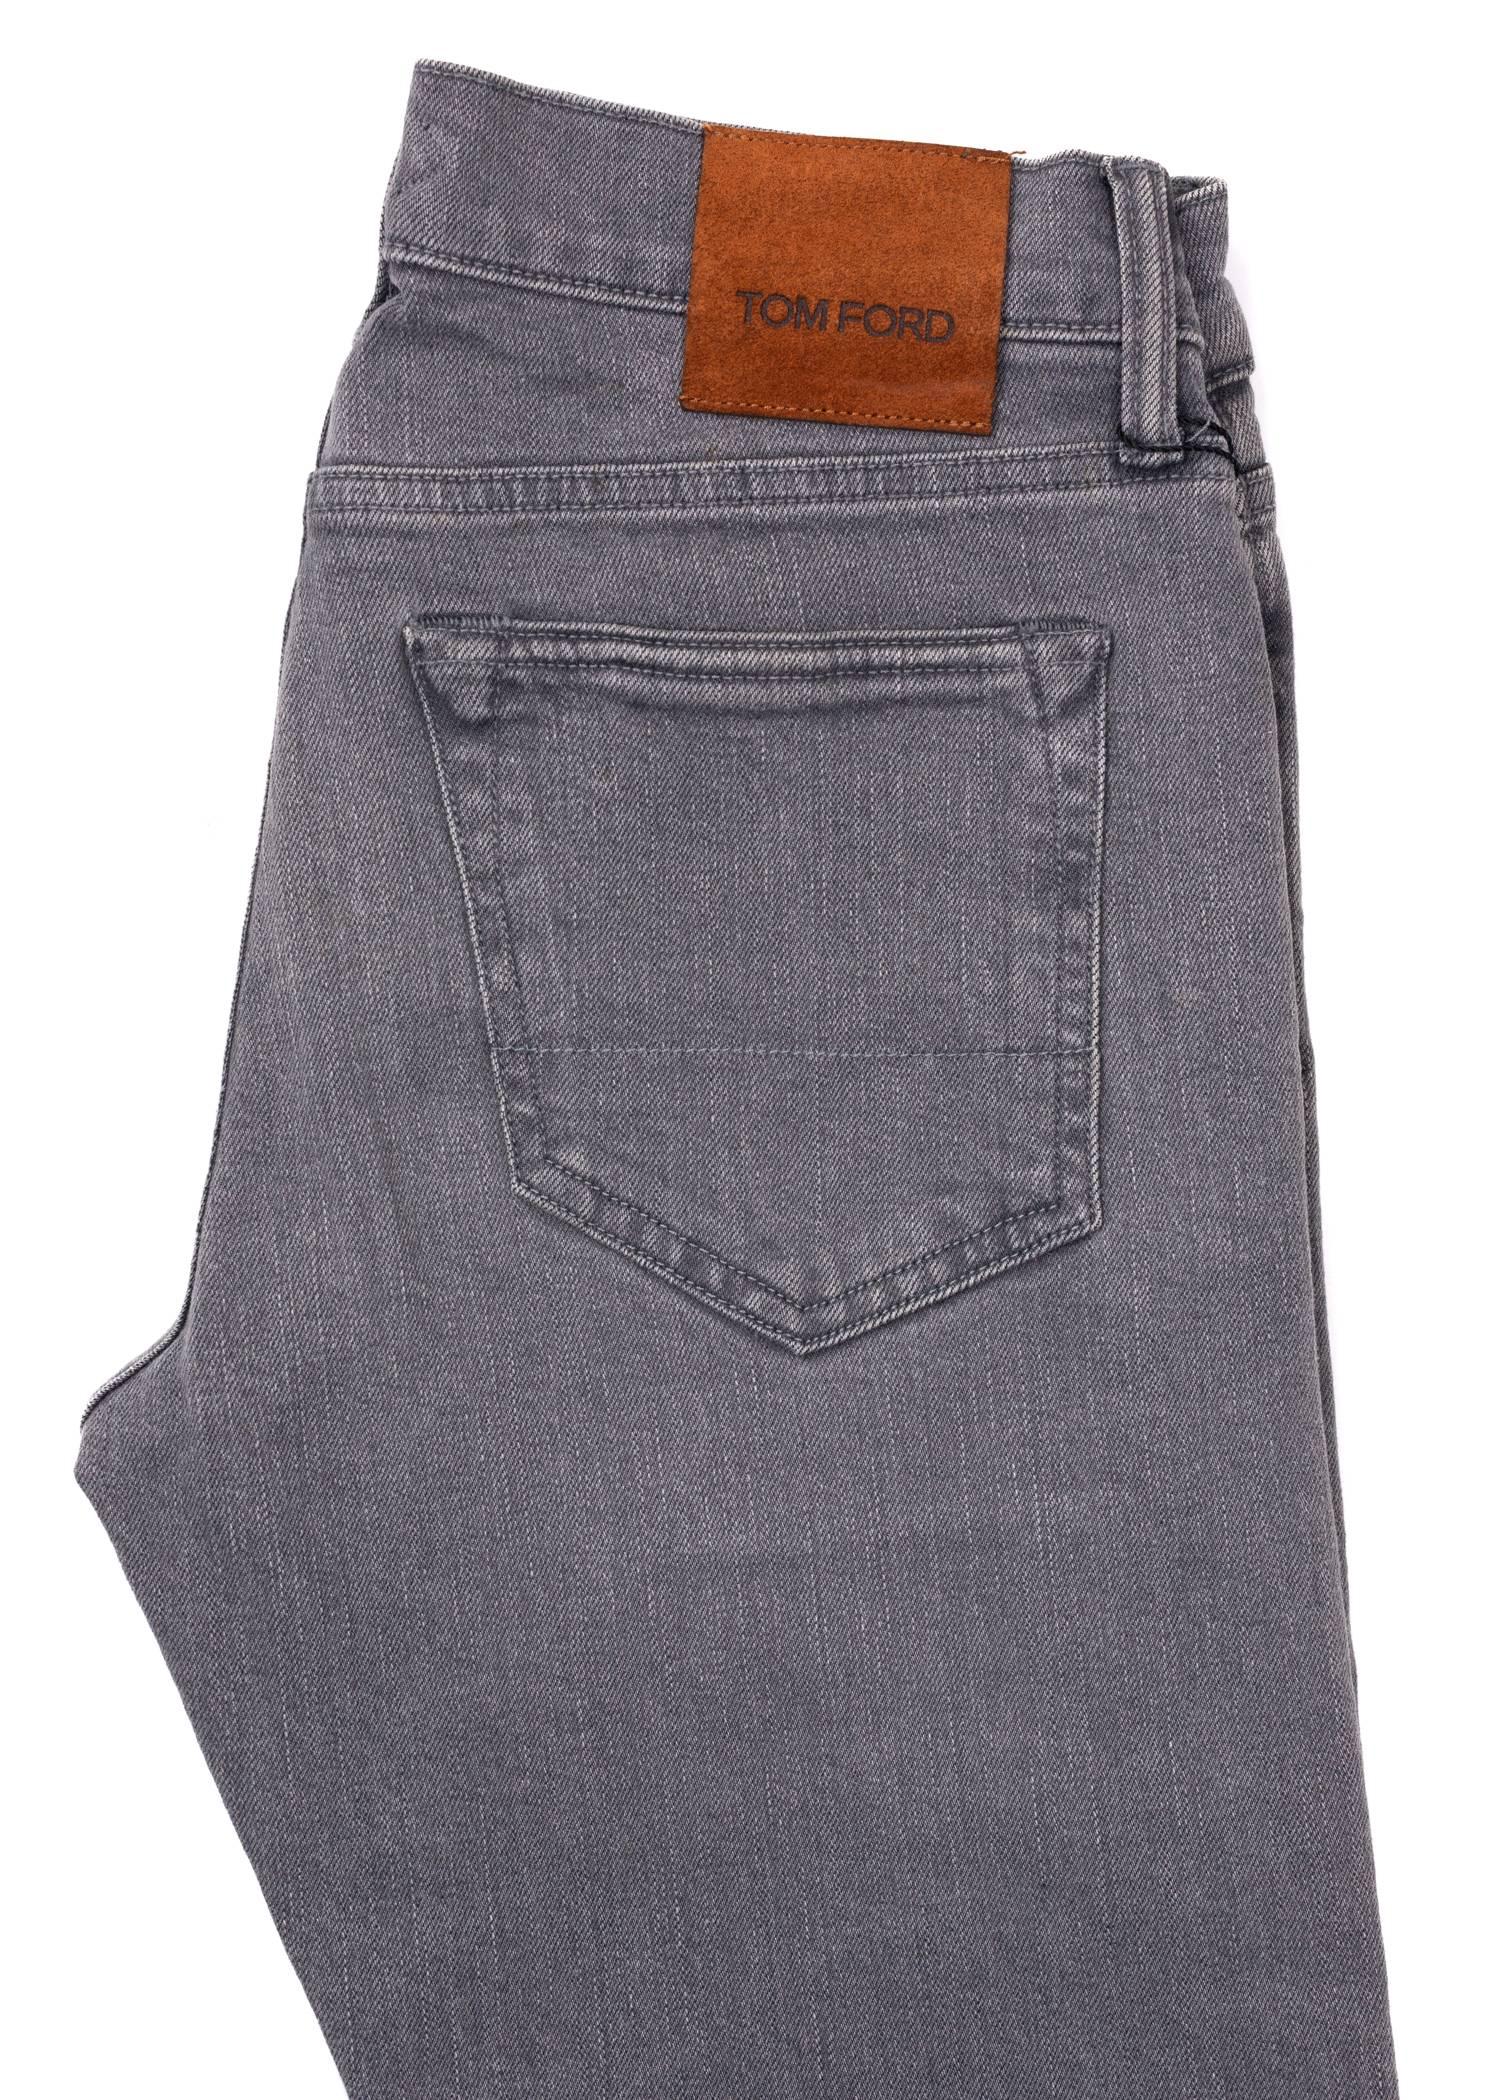 Gray Tom Ford Selvedge Denim Jeans Light Grey Wash Size 32 Regular Fit Model   For Sale